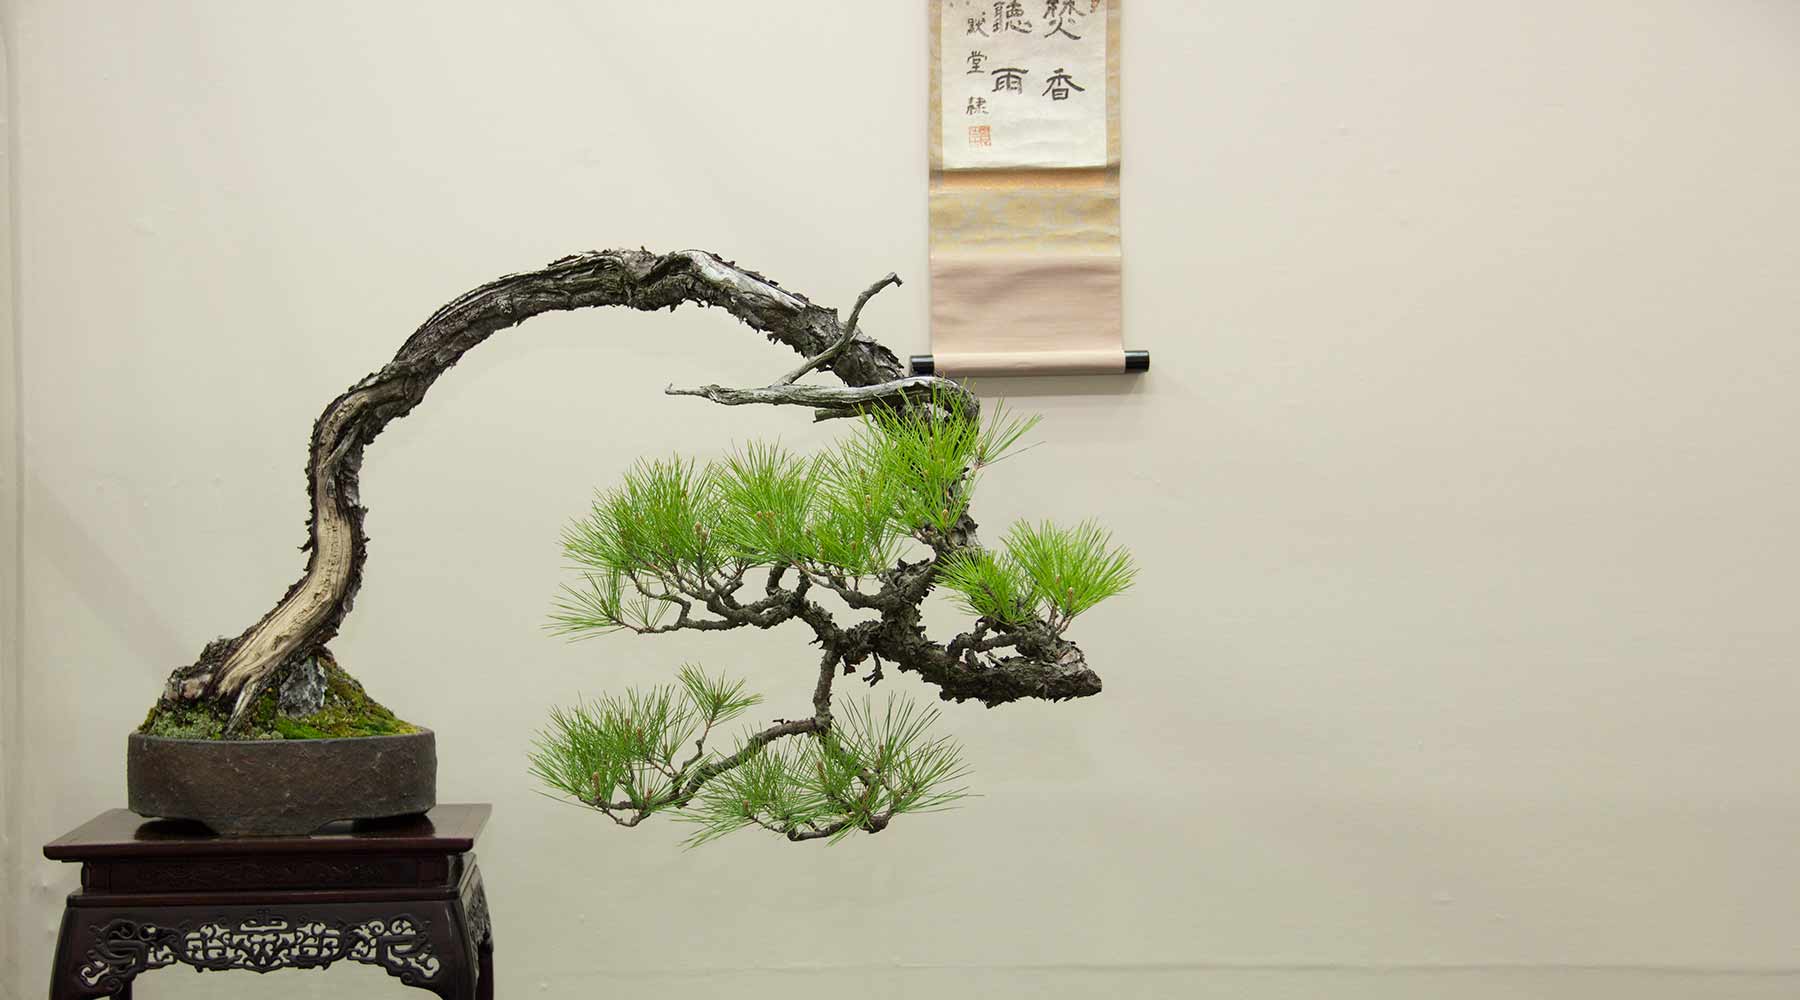 Pine bonsai Collection